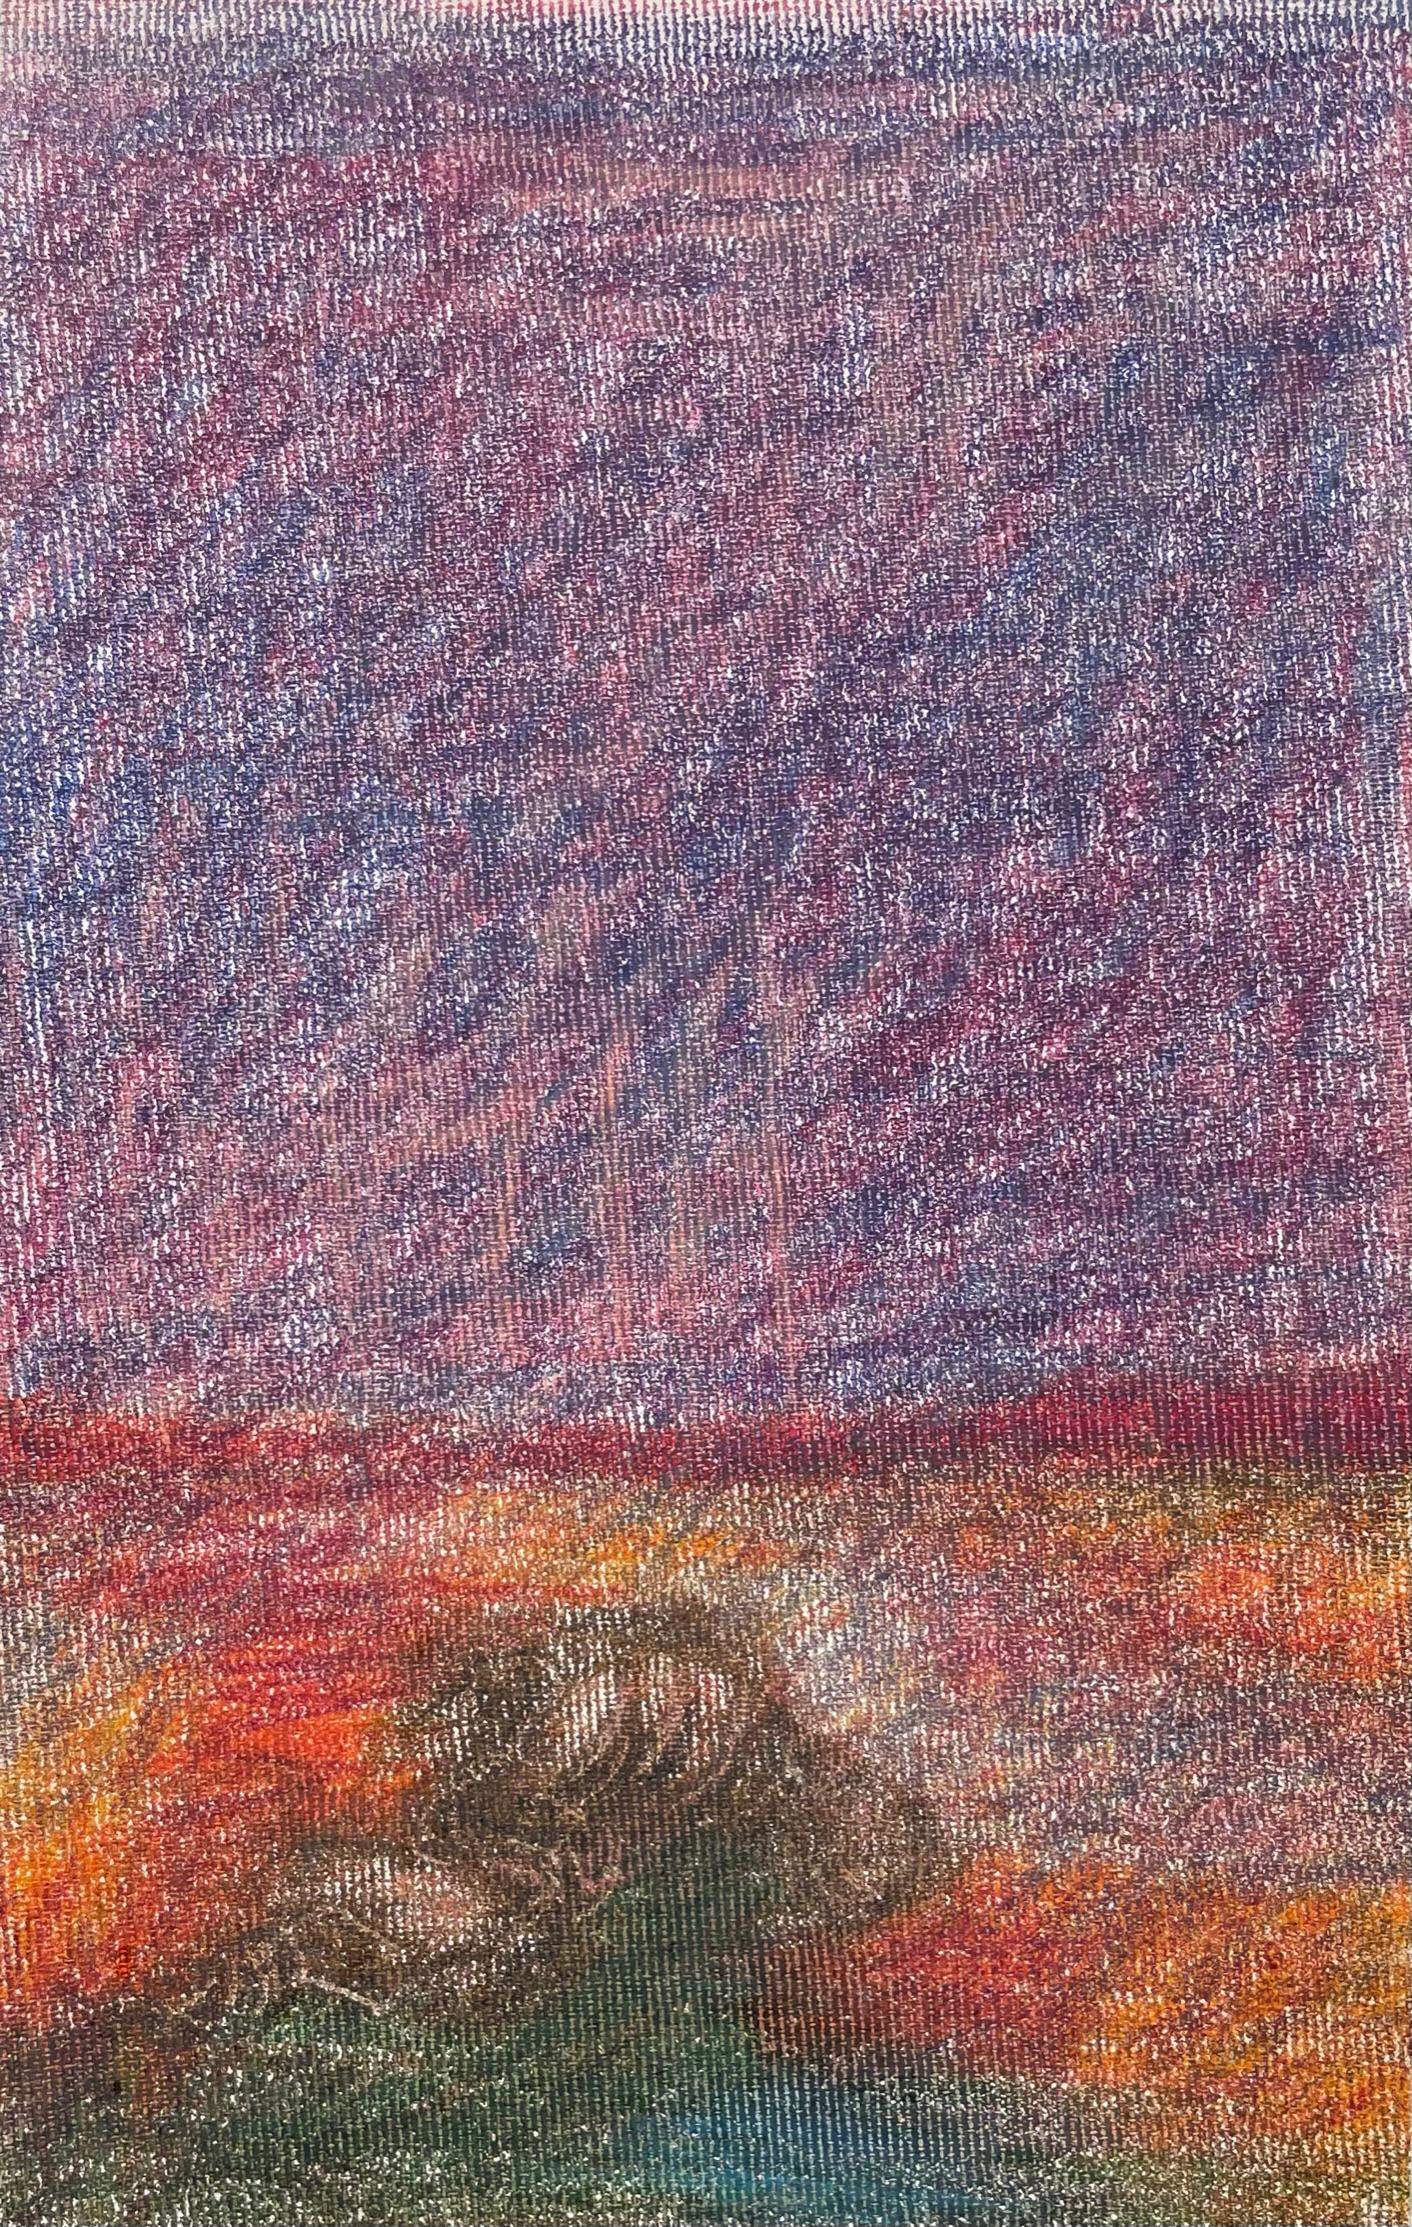 Landscape Art Zsolt Berszán - Body in the Field n°1 - Rouge, paysage, crayon de couleur, dessin